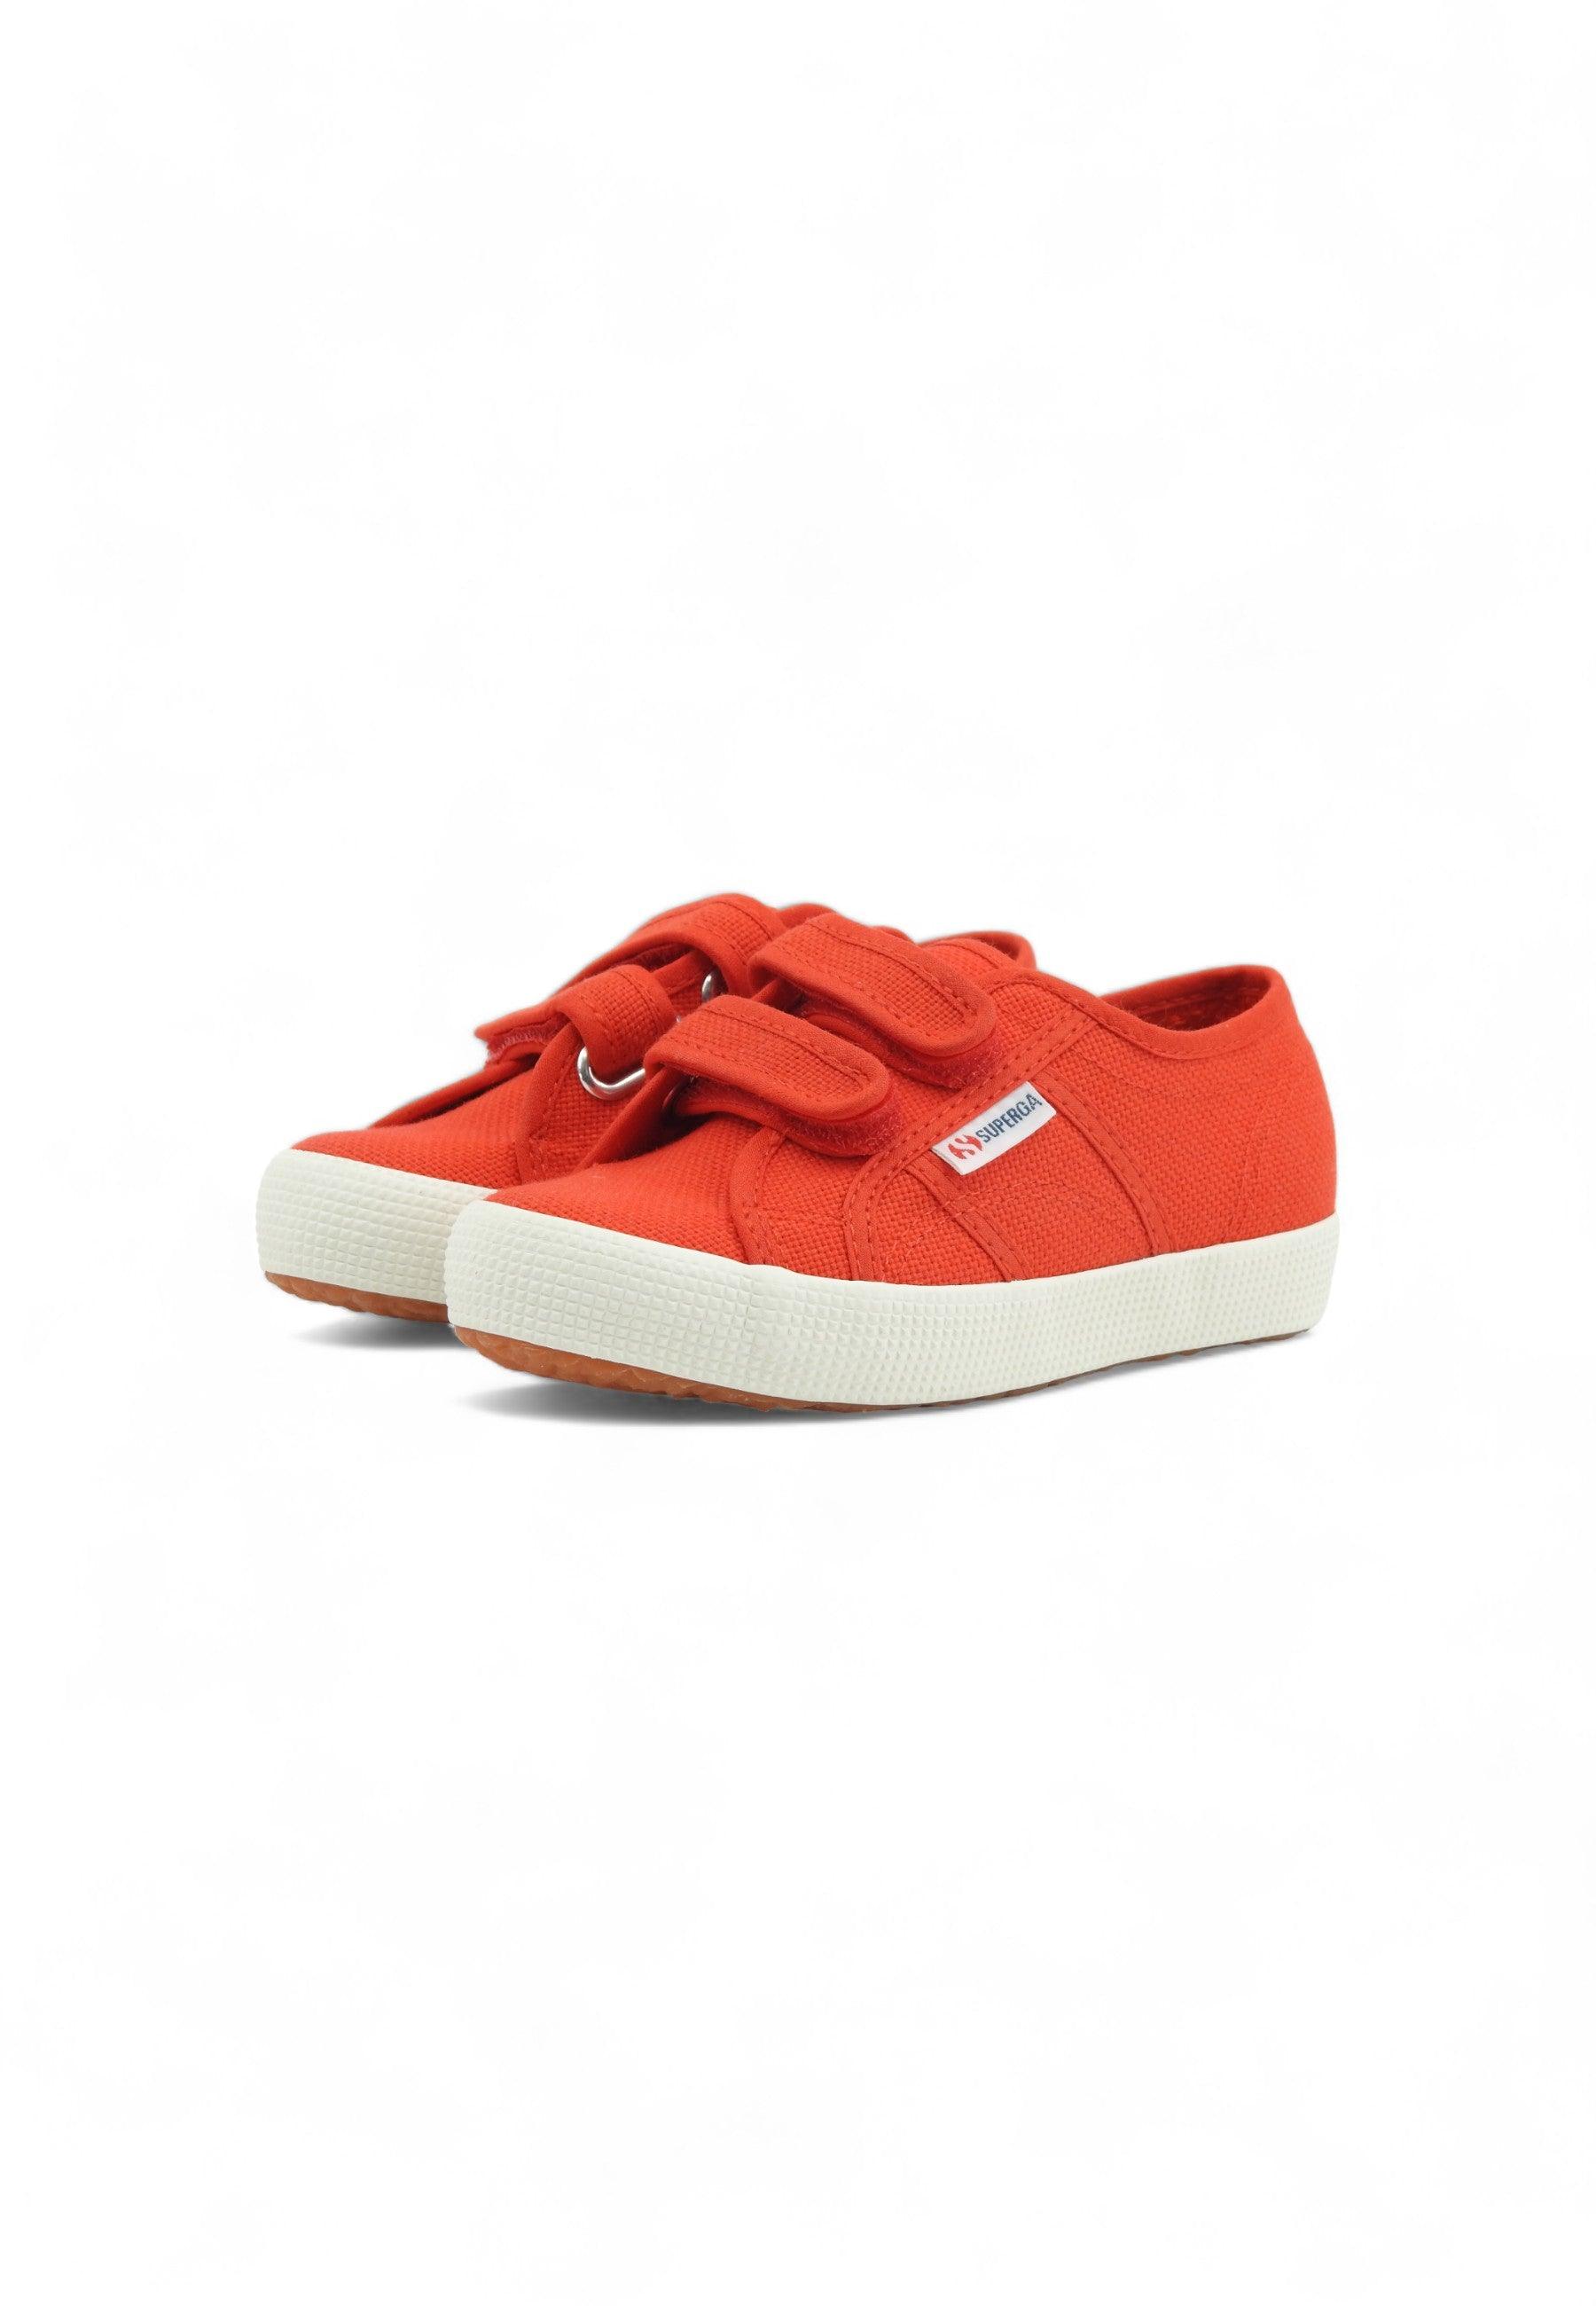 SUPERGA 2750 Sneaker Bambino Red S00CCT0 - Sandrini Calzature e Abbigliamento